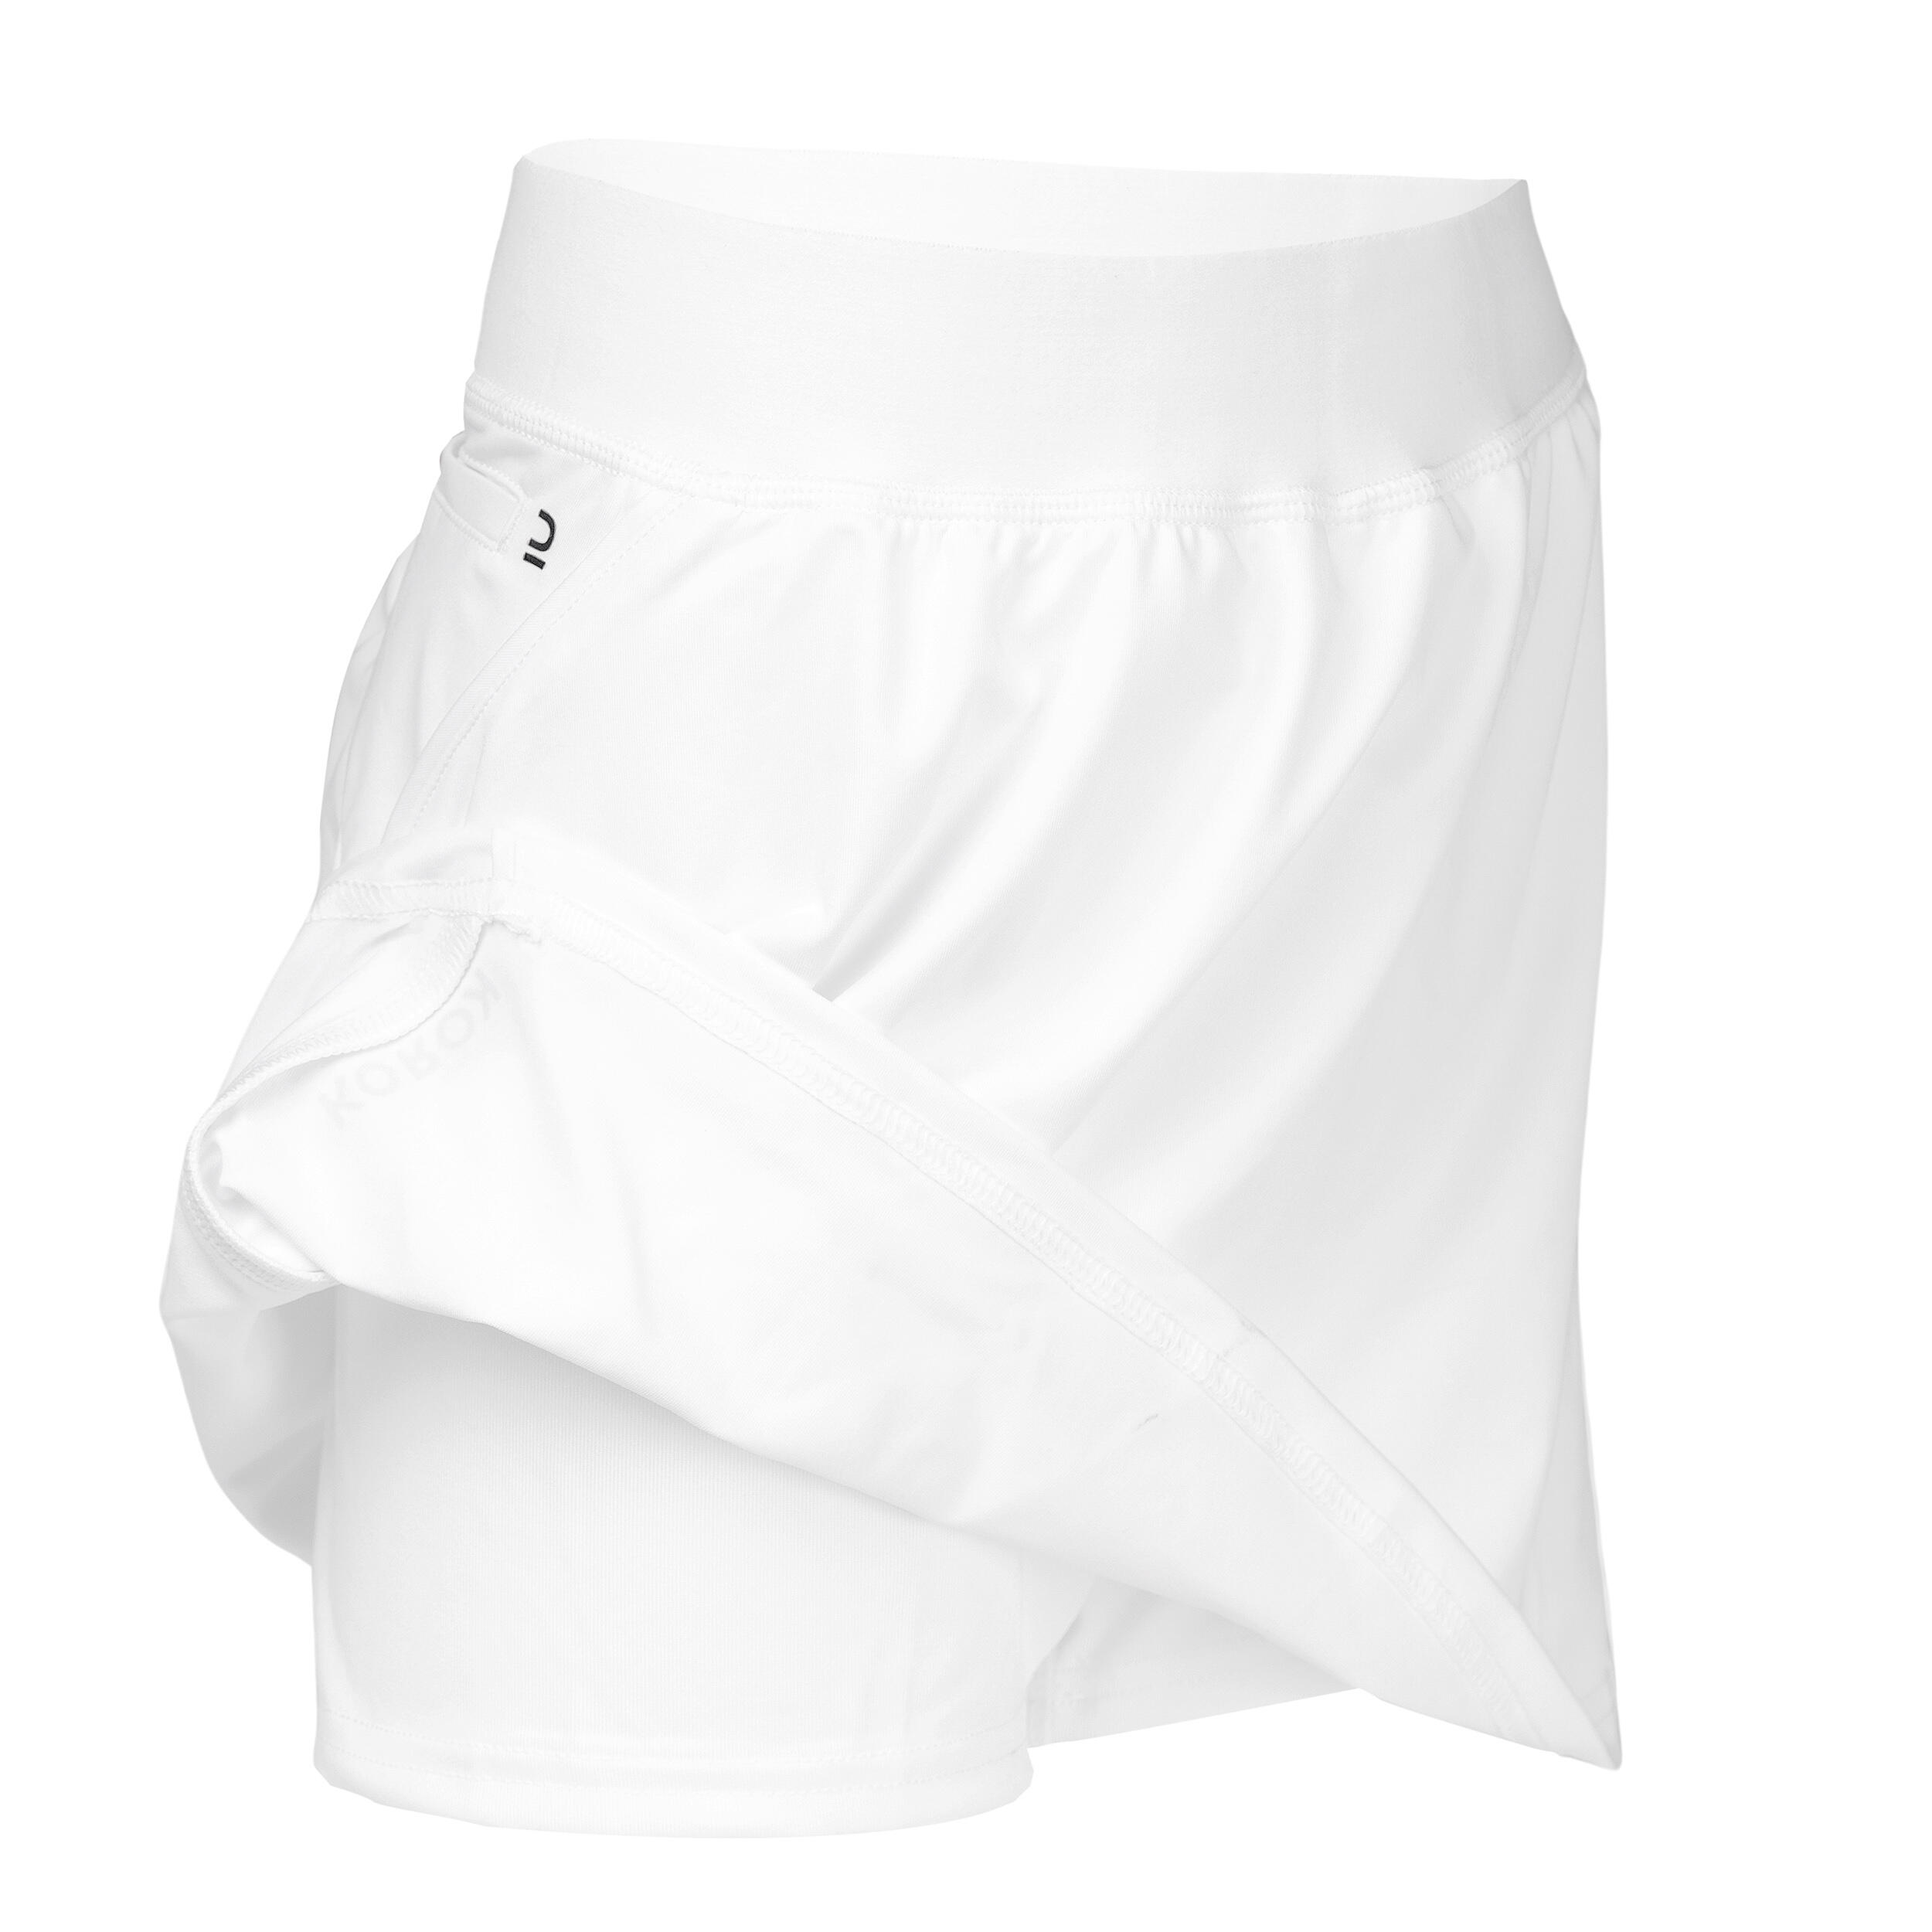 Women's High-Intensity Field Hockey Skirt FH900 - White 3/4